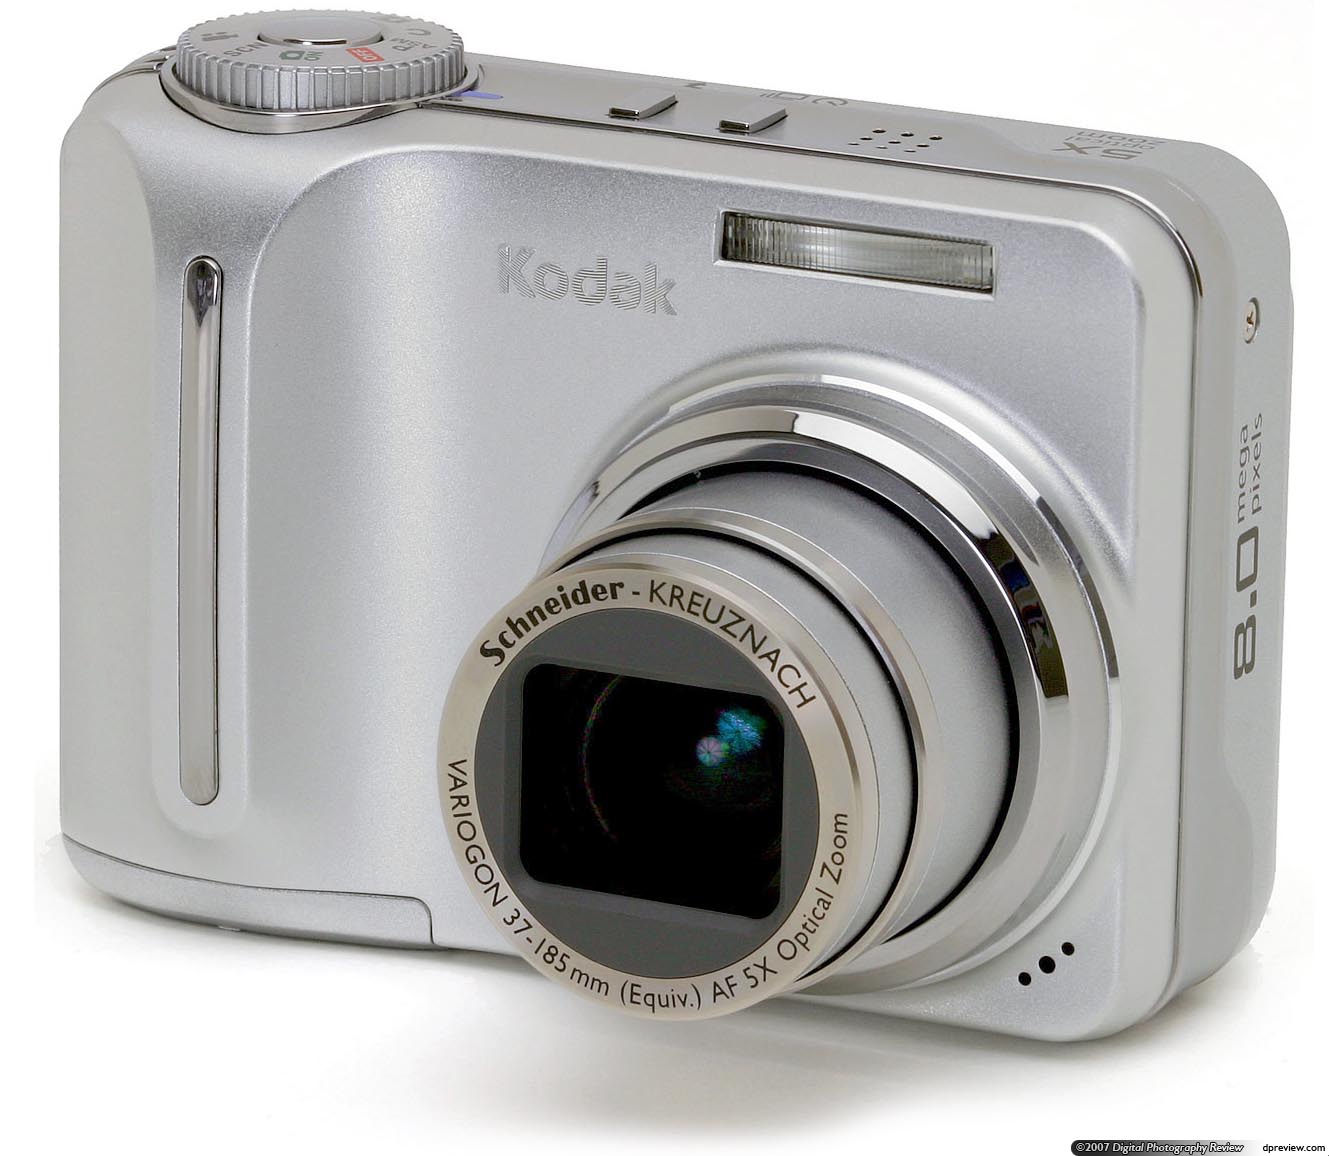 Kodak C875 Digital Camera